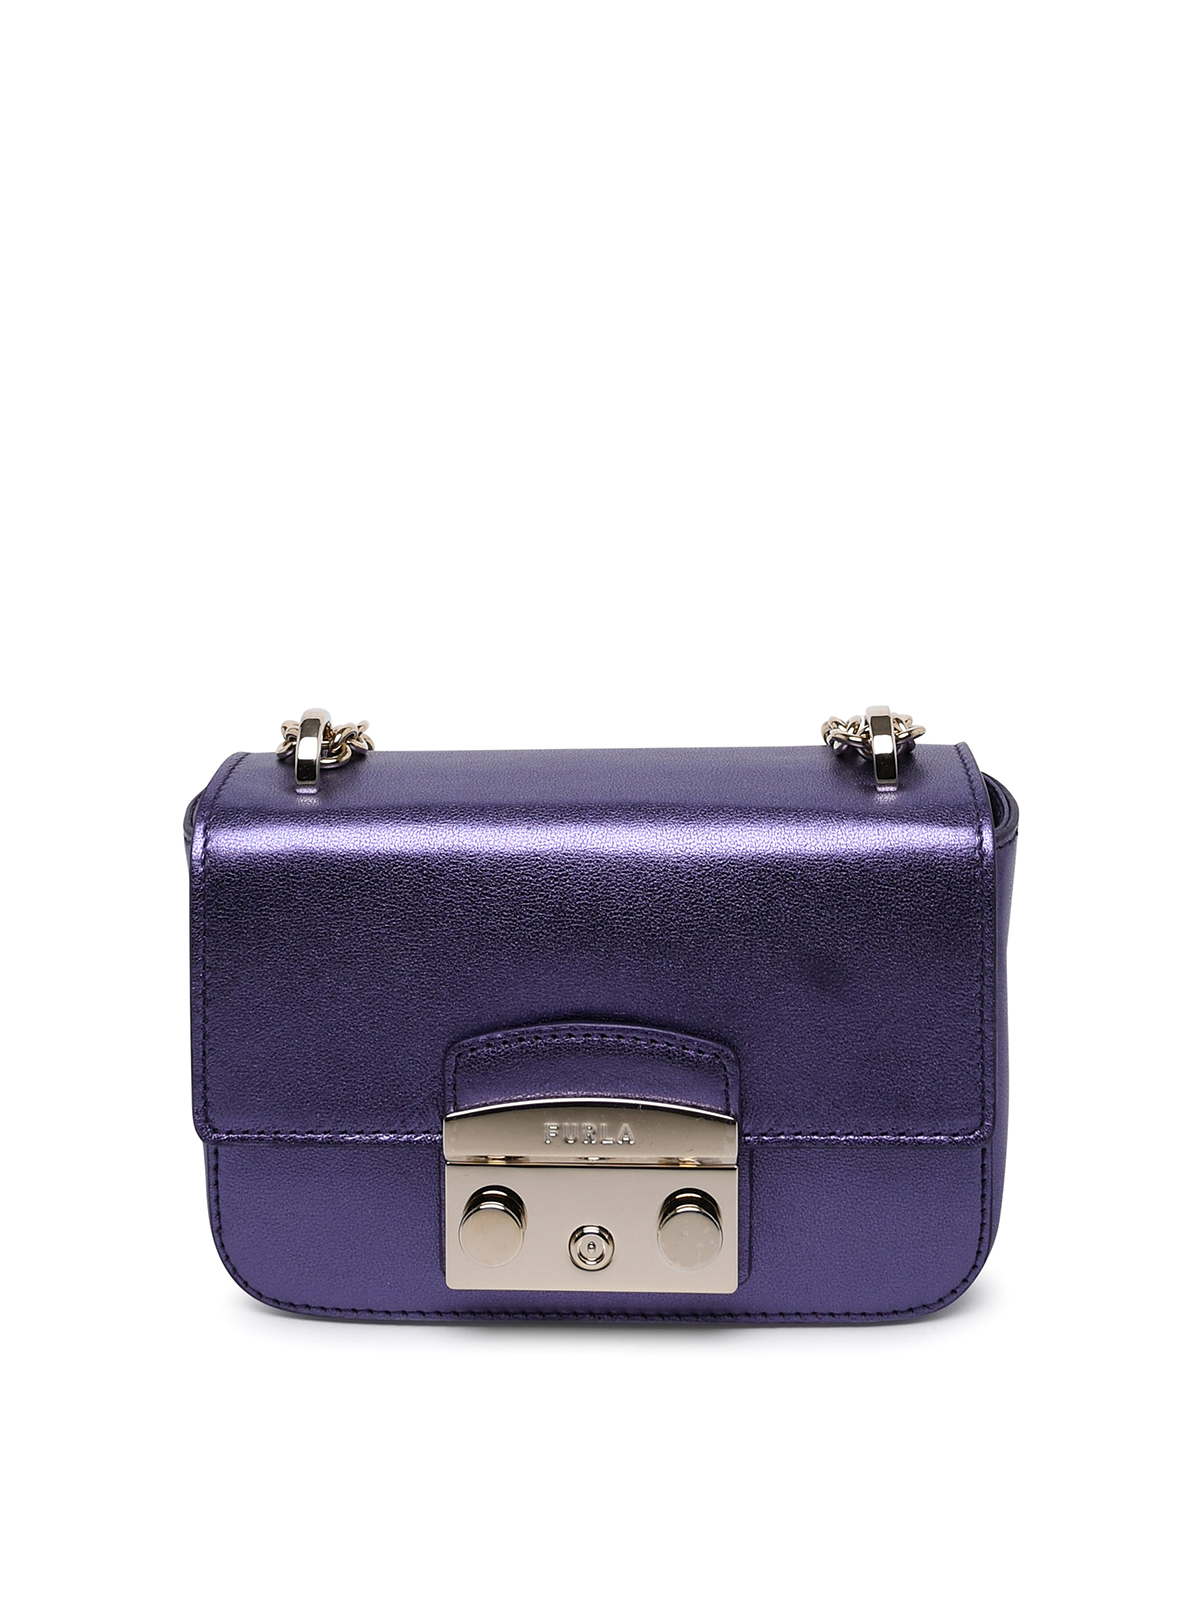 Furla Metropolis Bag In Metallic Leather In Purple